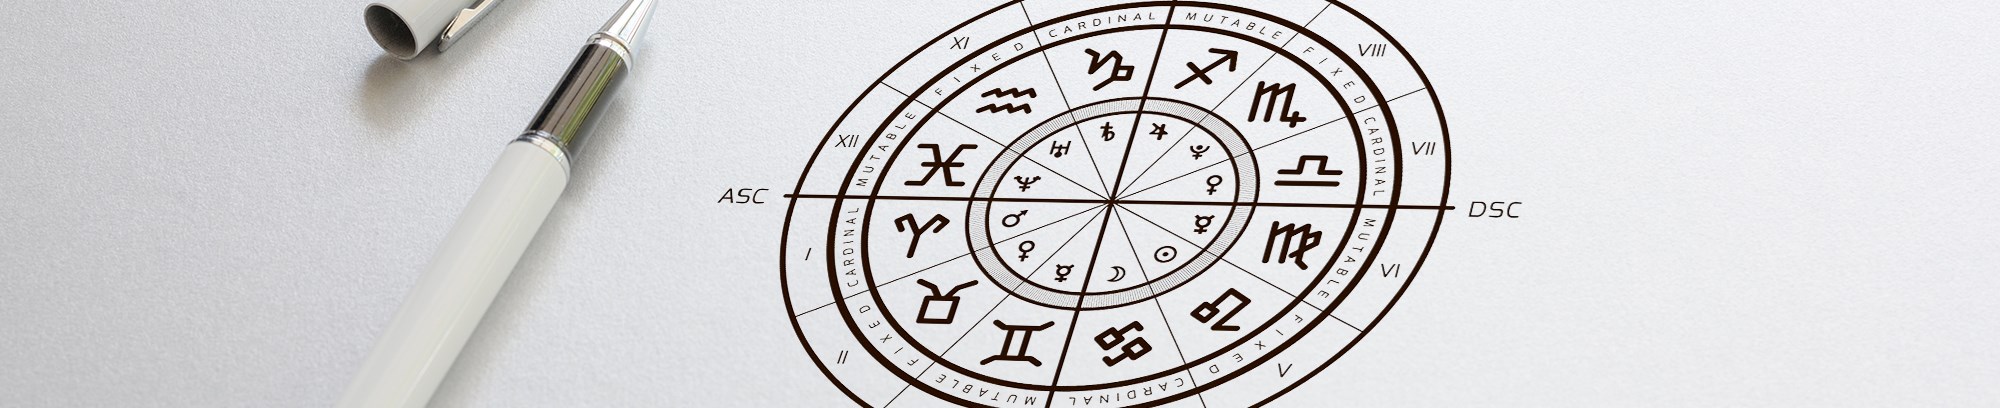 Astrologisk skema med stjernetegn